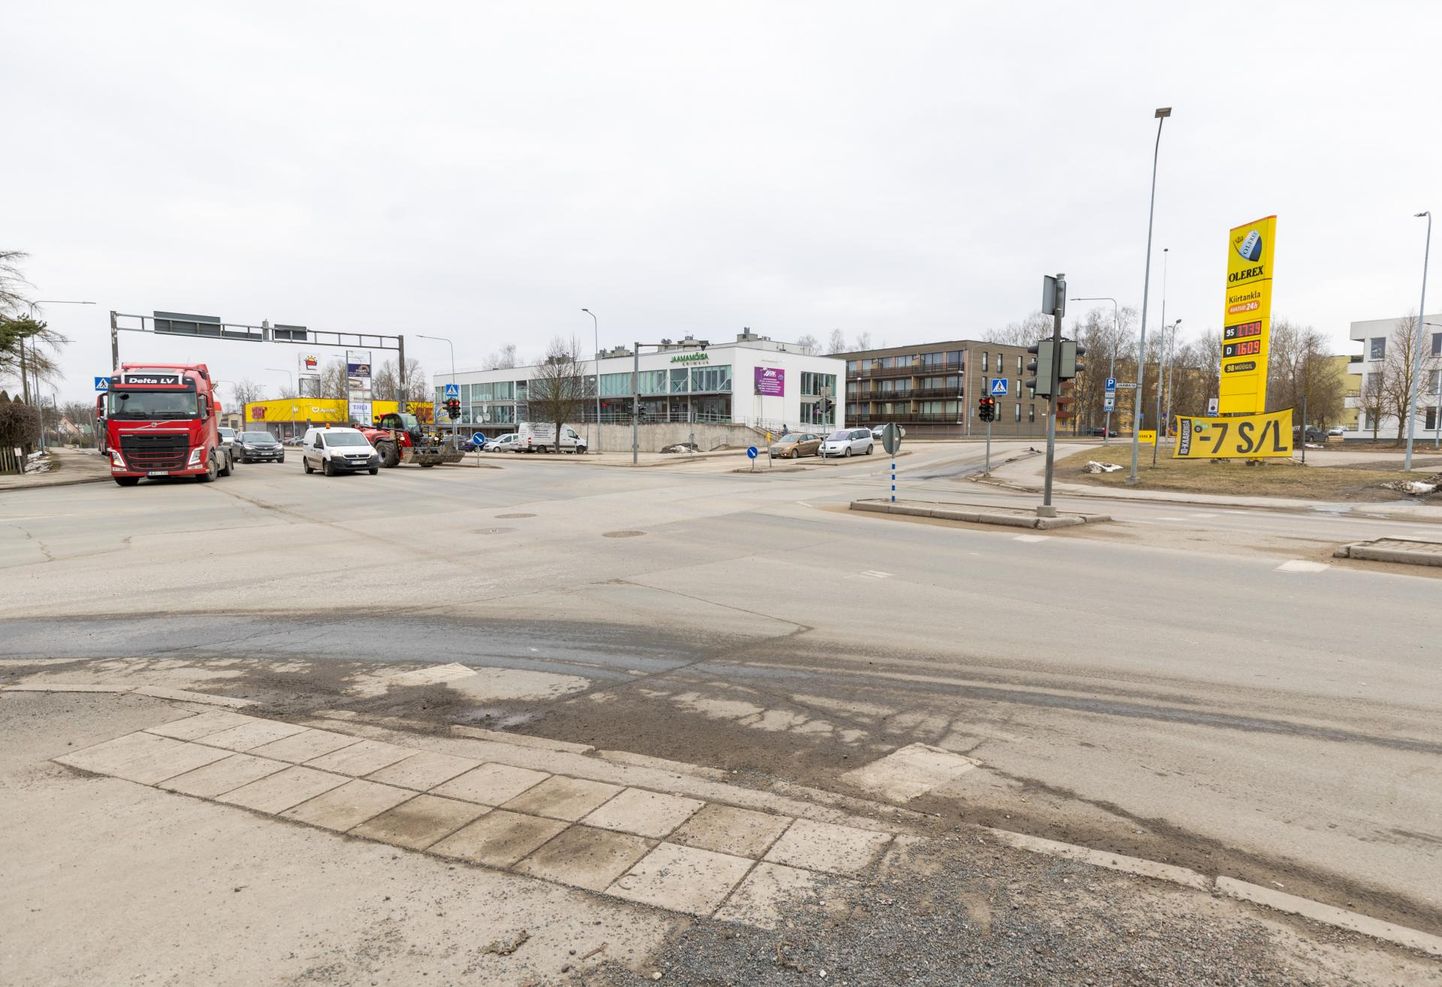 Põhja puiestee ja Jaama tänava ristmik oli eile veel vabalt läbitav, ent 1. aprillist läheb see kinni ja algab ehitus.